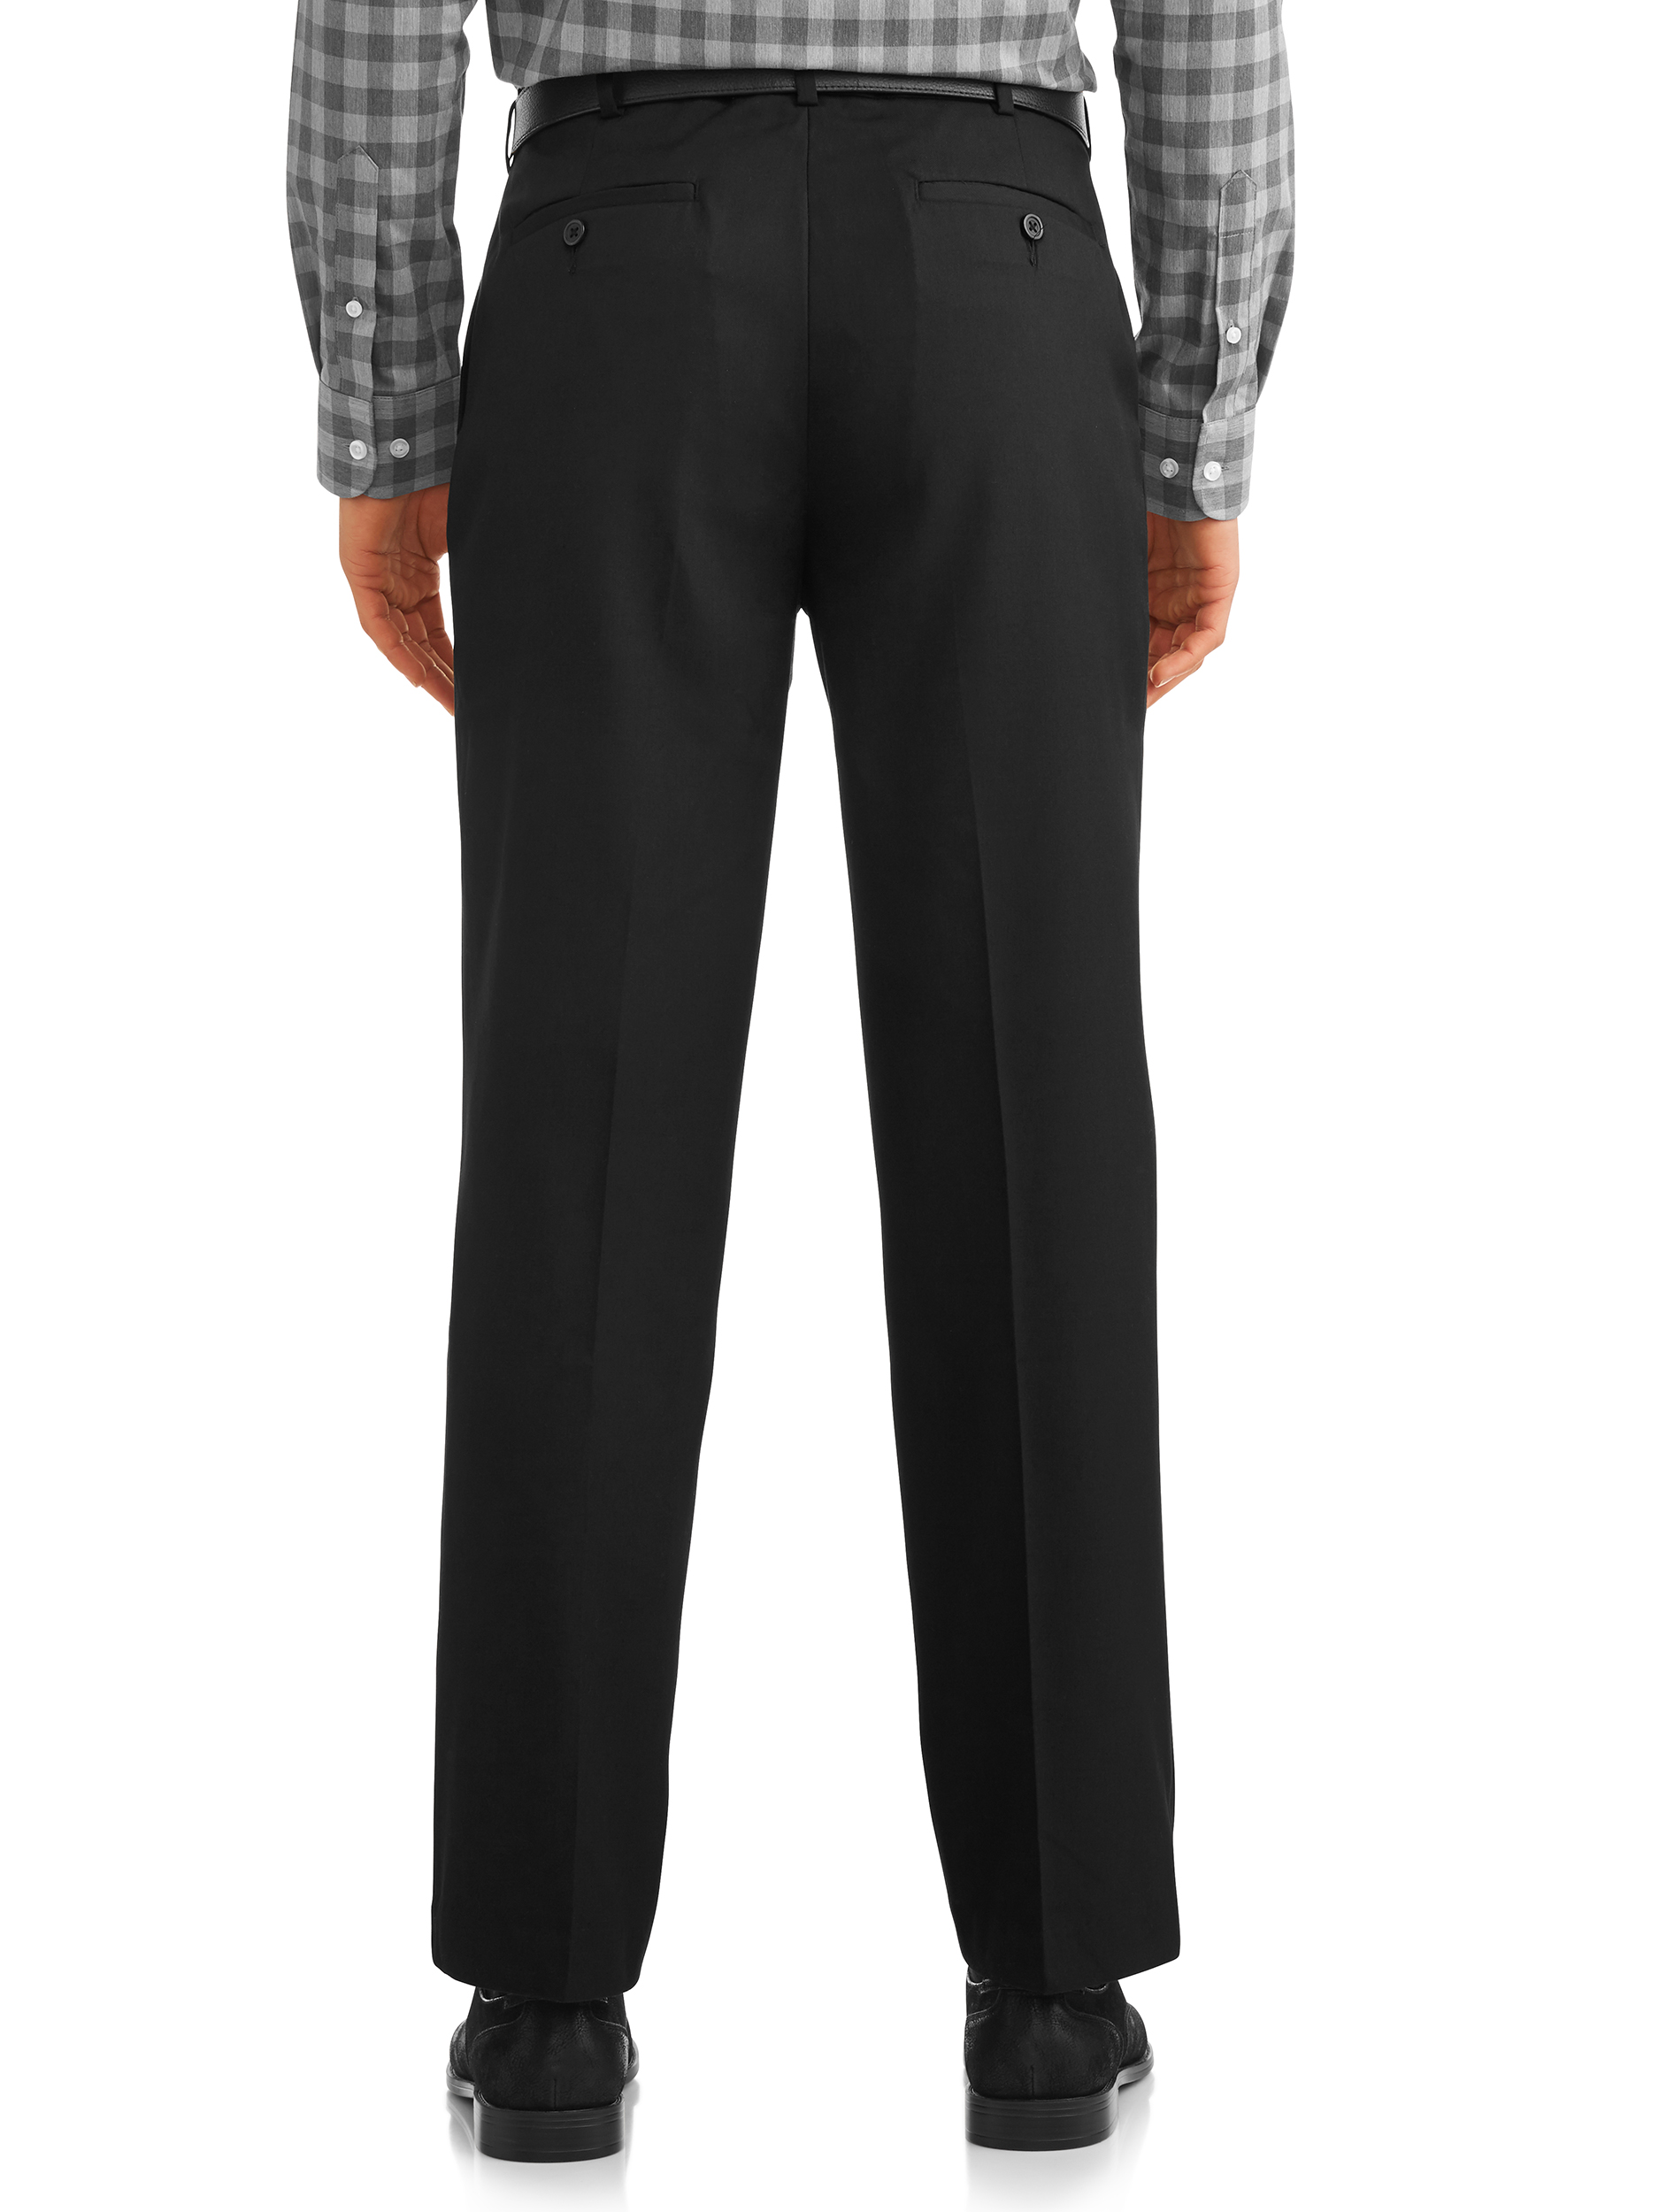 Men's Suit Pants - image 3 of 4